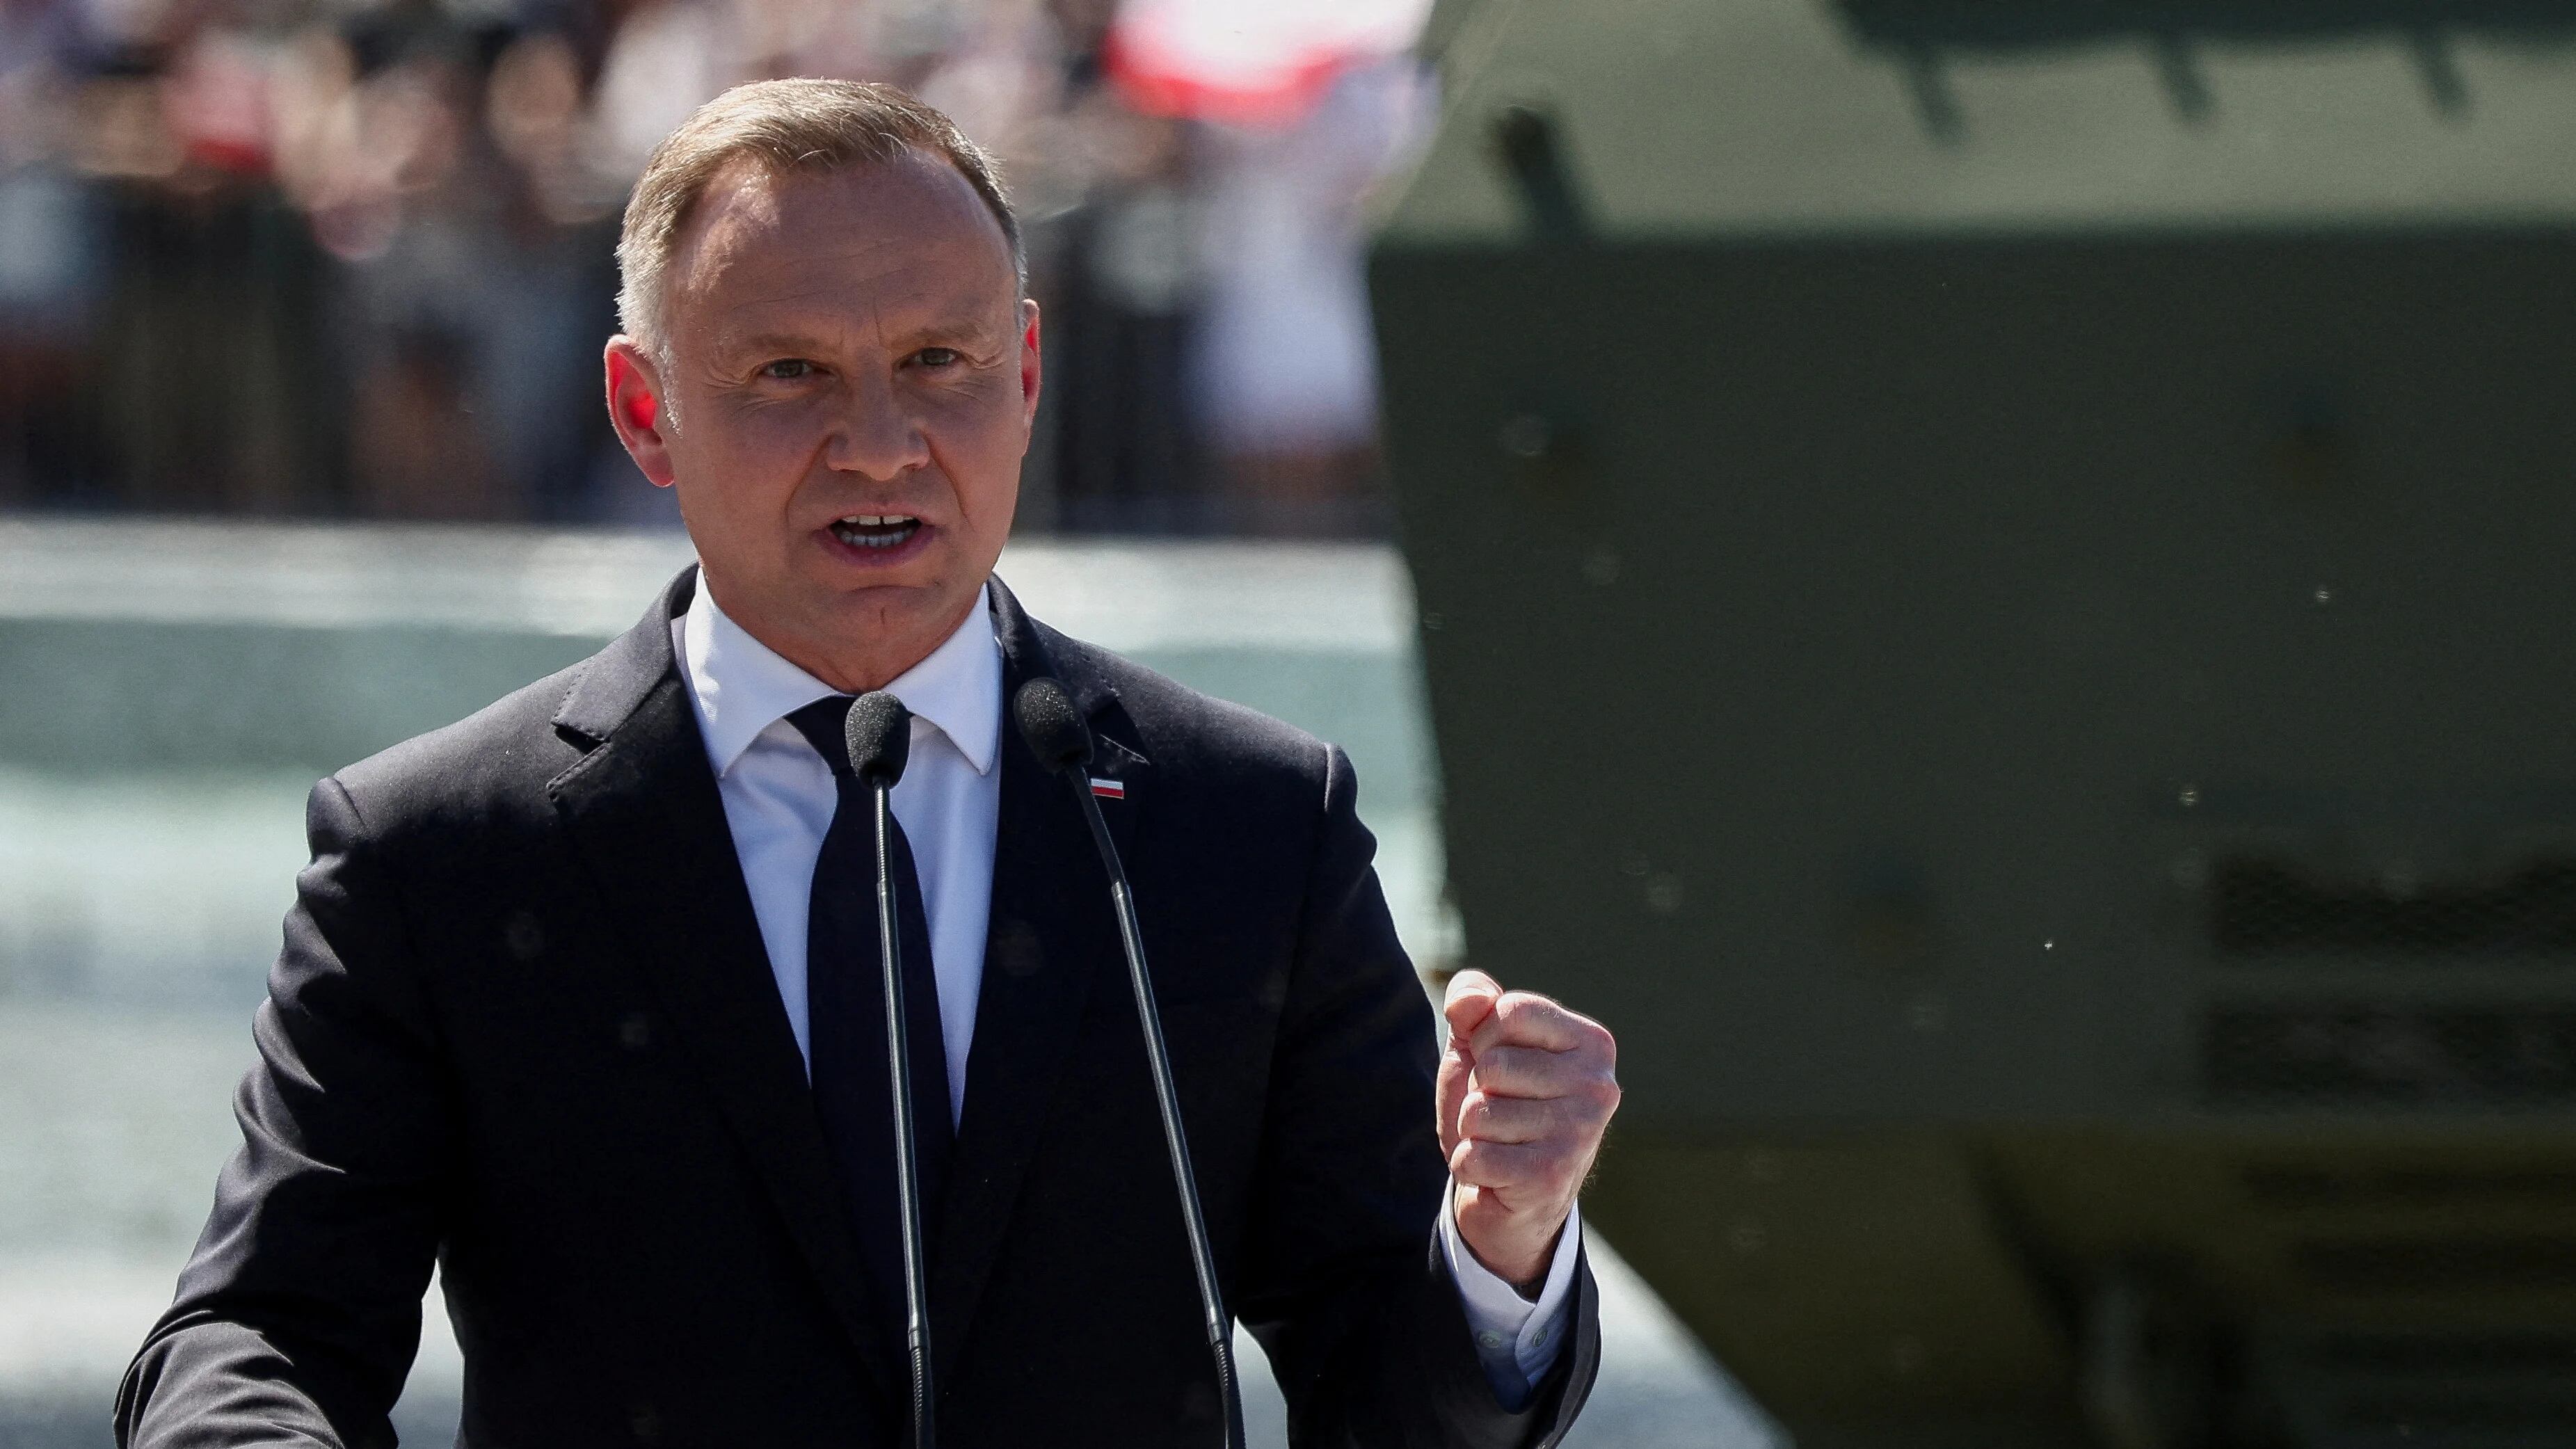 Polonia dijo que las polémicas no afectarán su relación con Ucrania pero advirtió a Zelensky: “Nunca vuelva a insultar a los polacos”